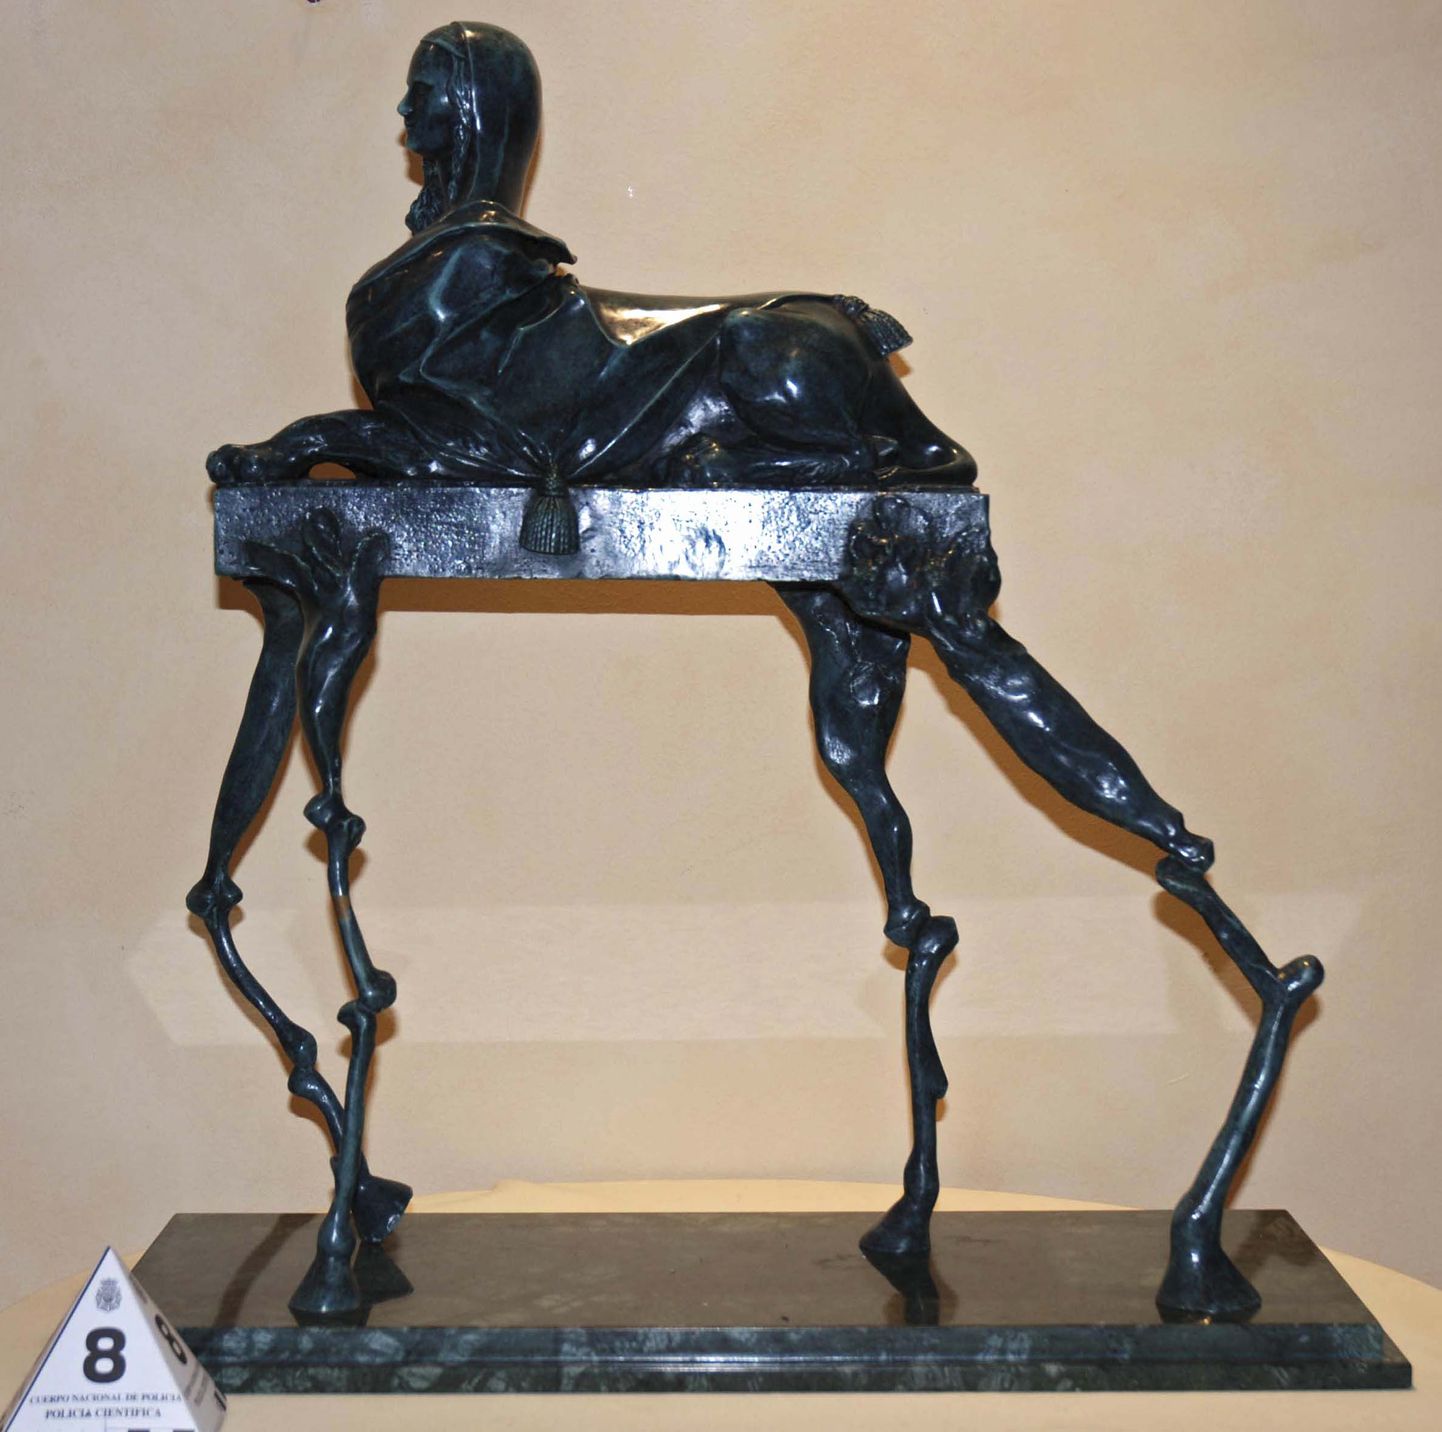 Hispaania politsei poolt konfiskeeritud skulptuur, mille autoriks on väidetavalt  Salvador Dali